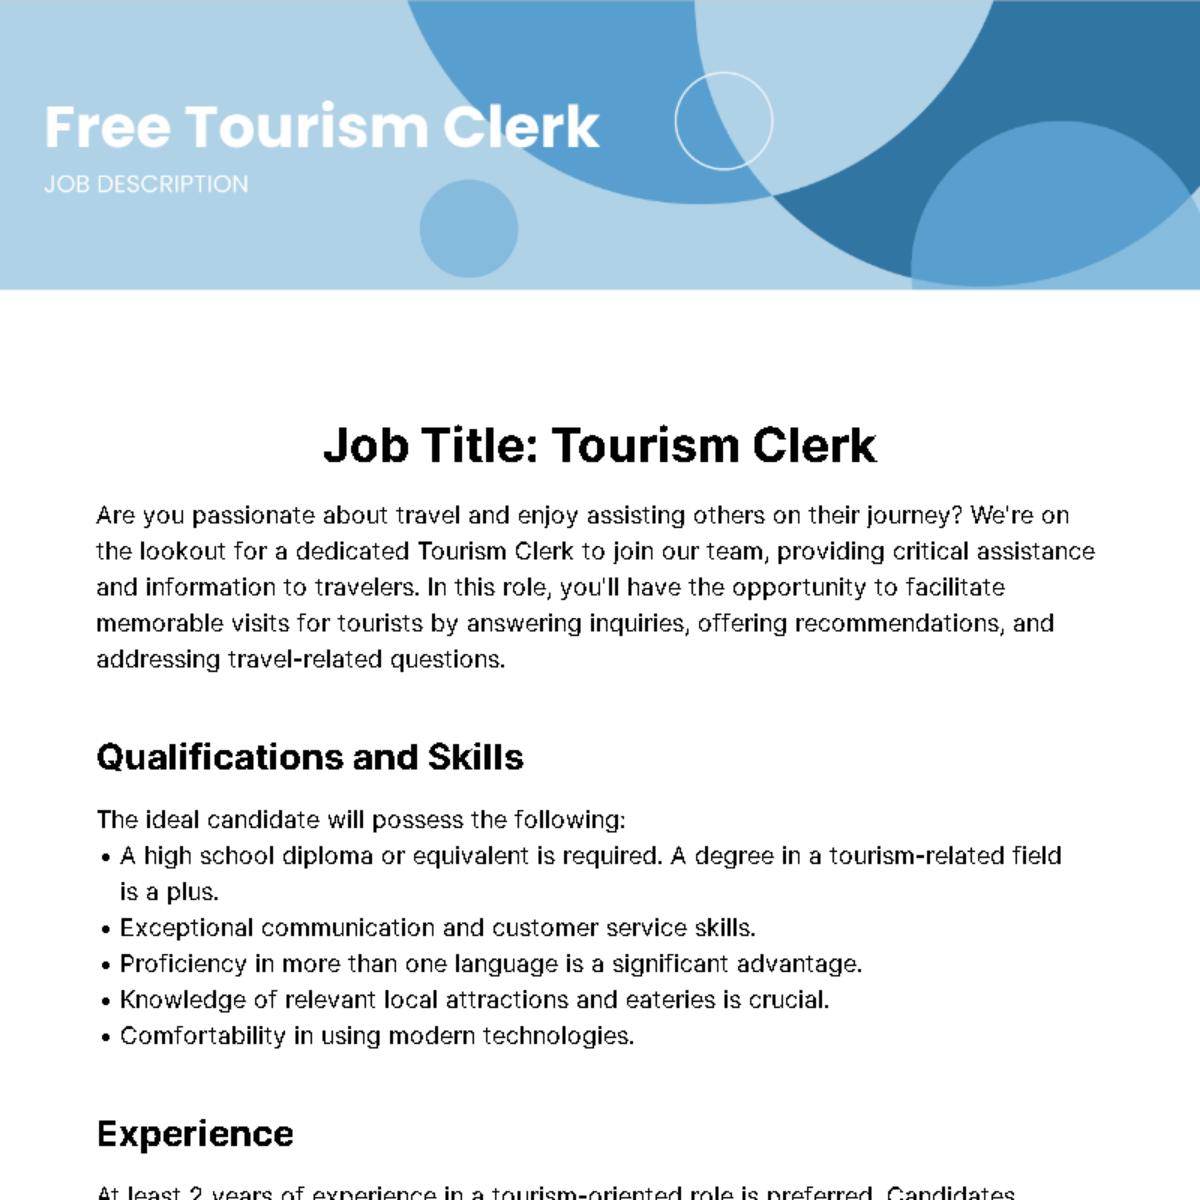 Free Tourism Clerk Job Description Template